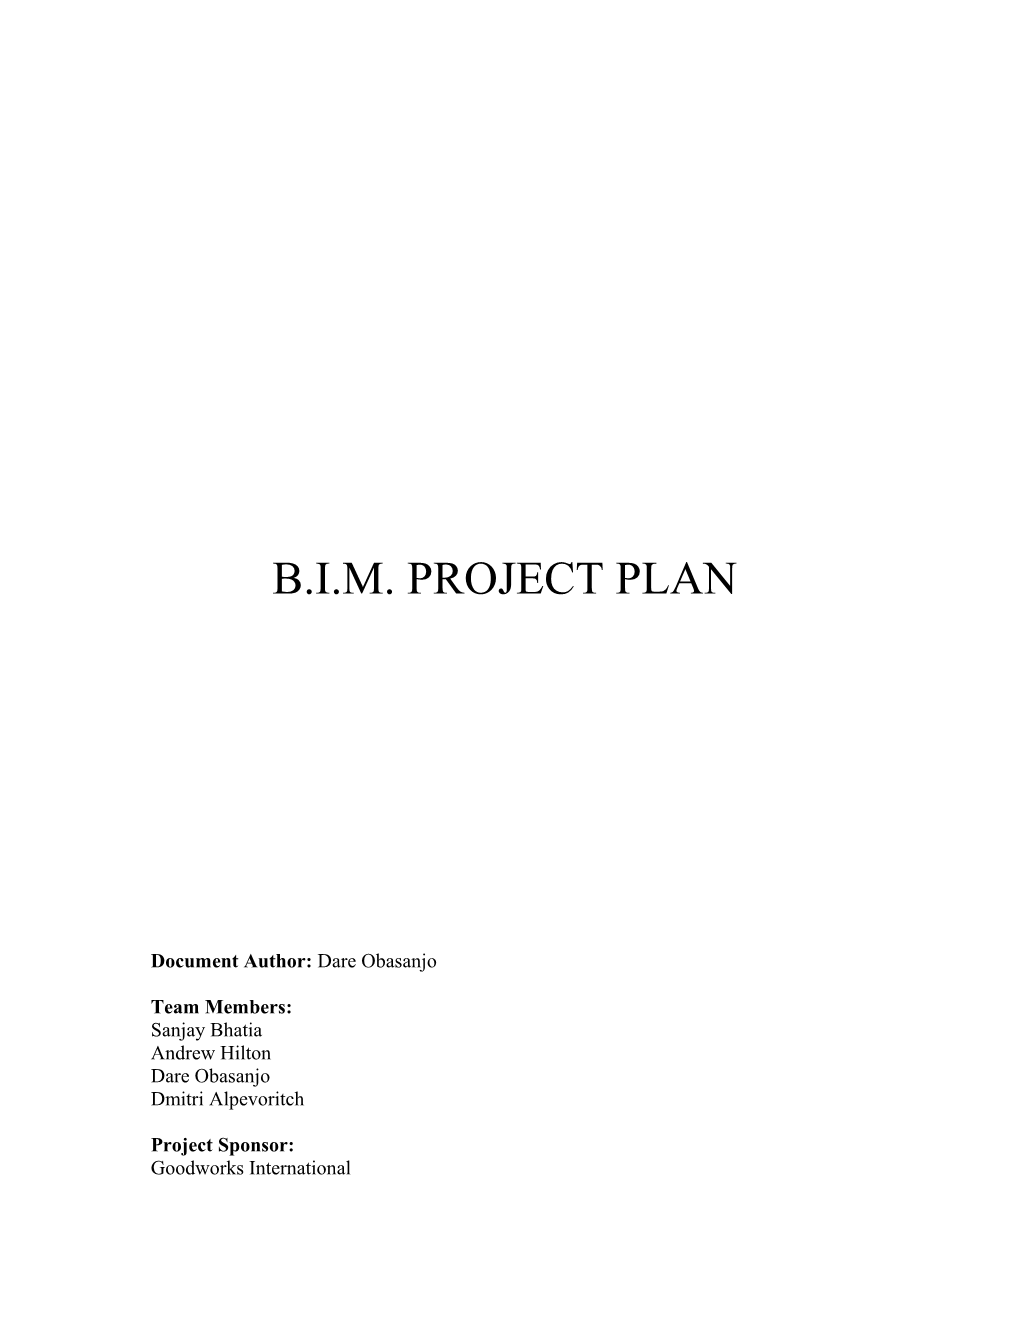 Secureme Project Plan